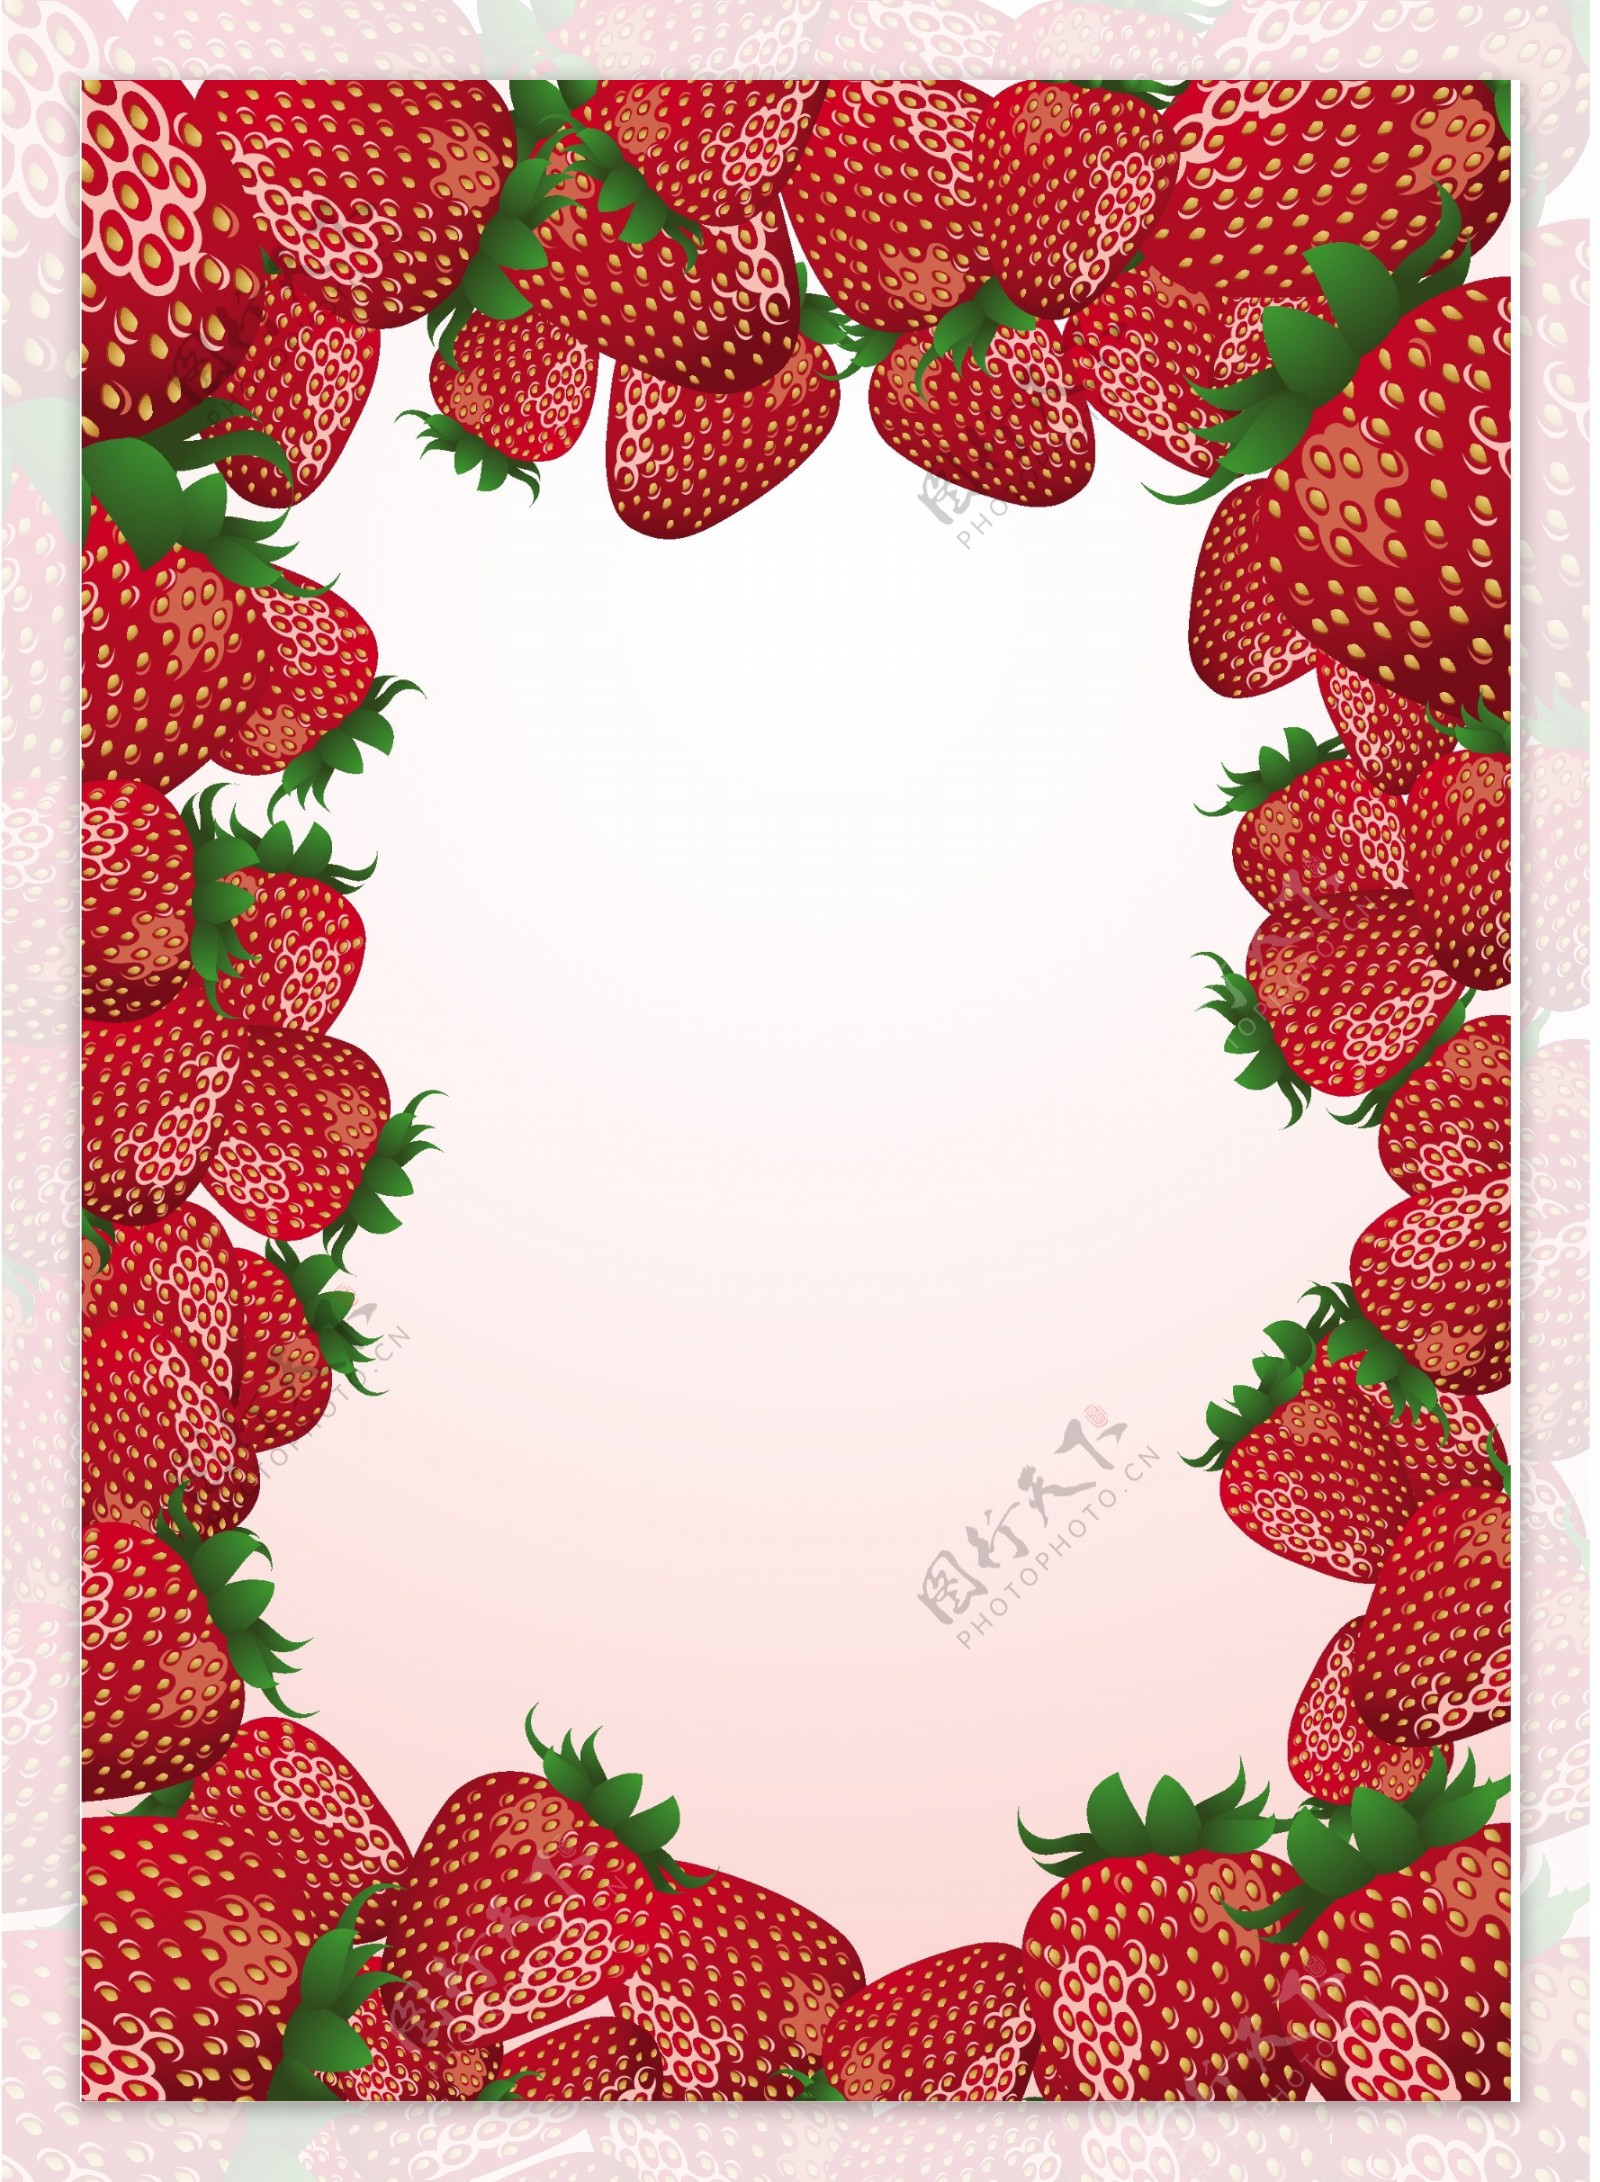 草莓创意矢量素材